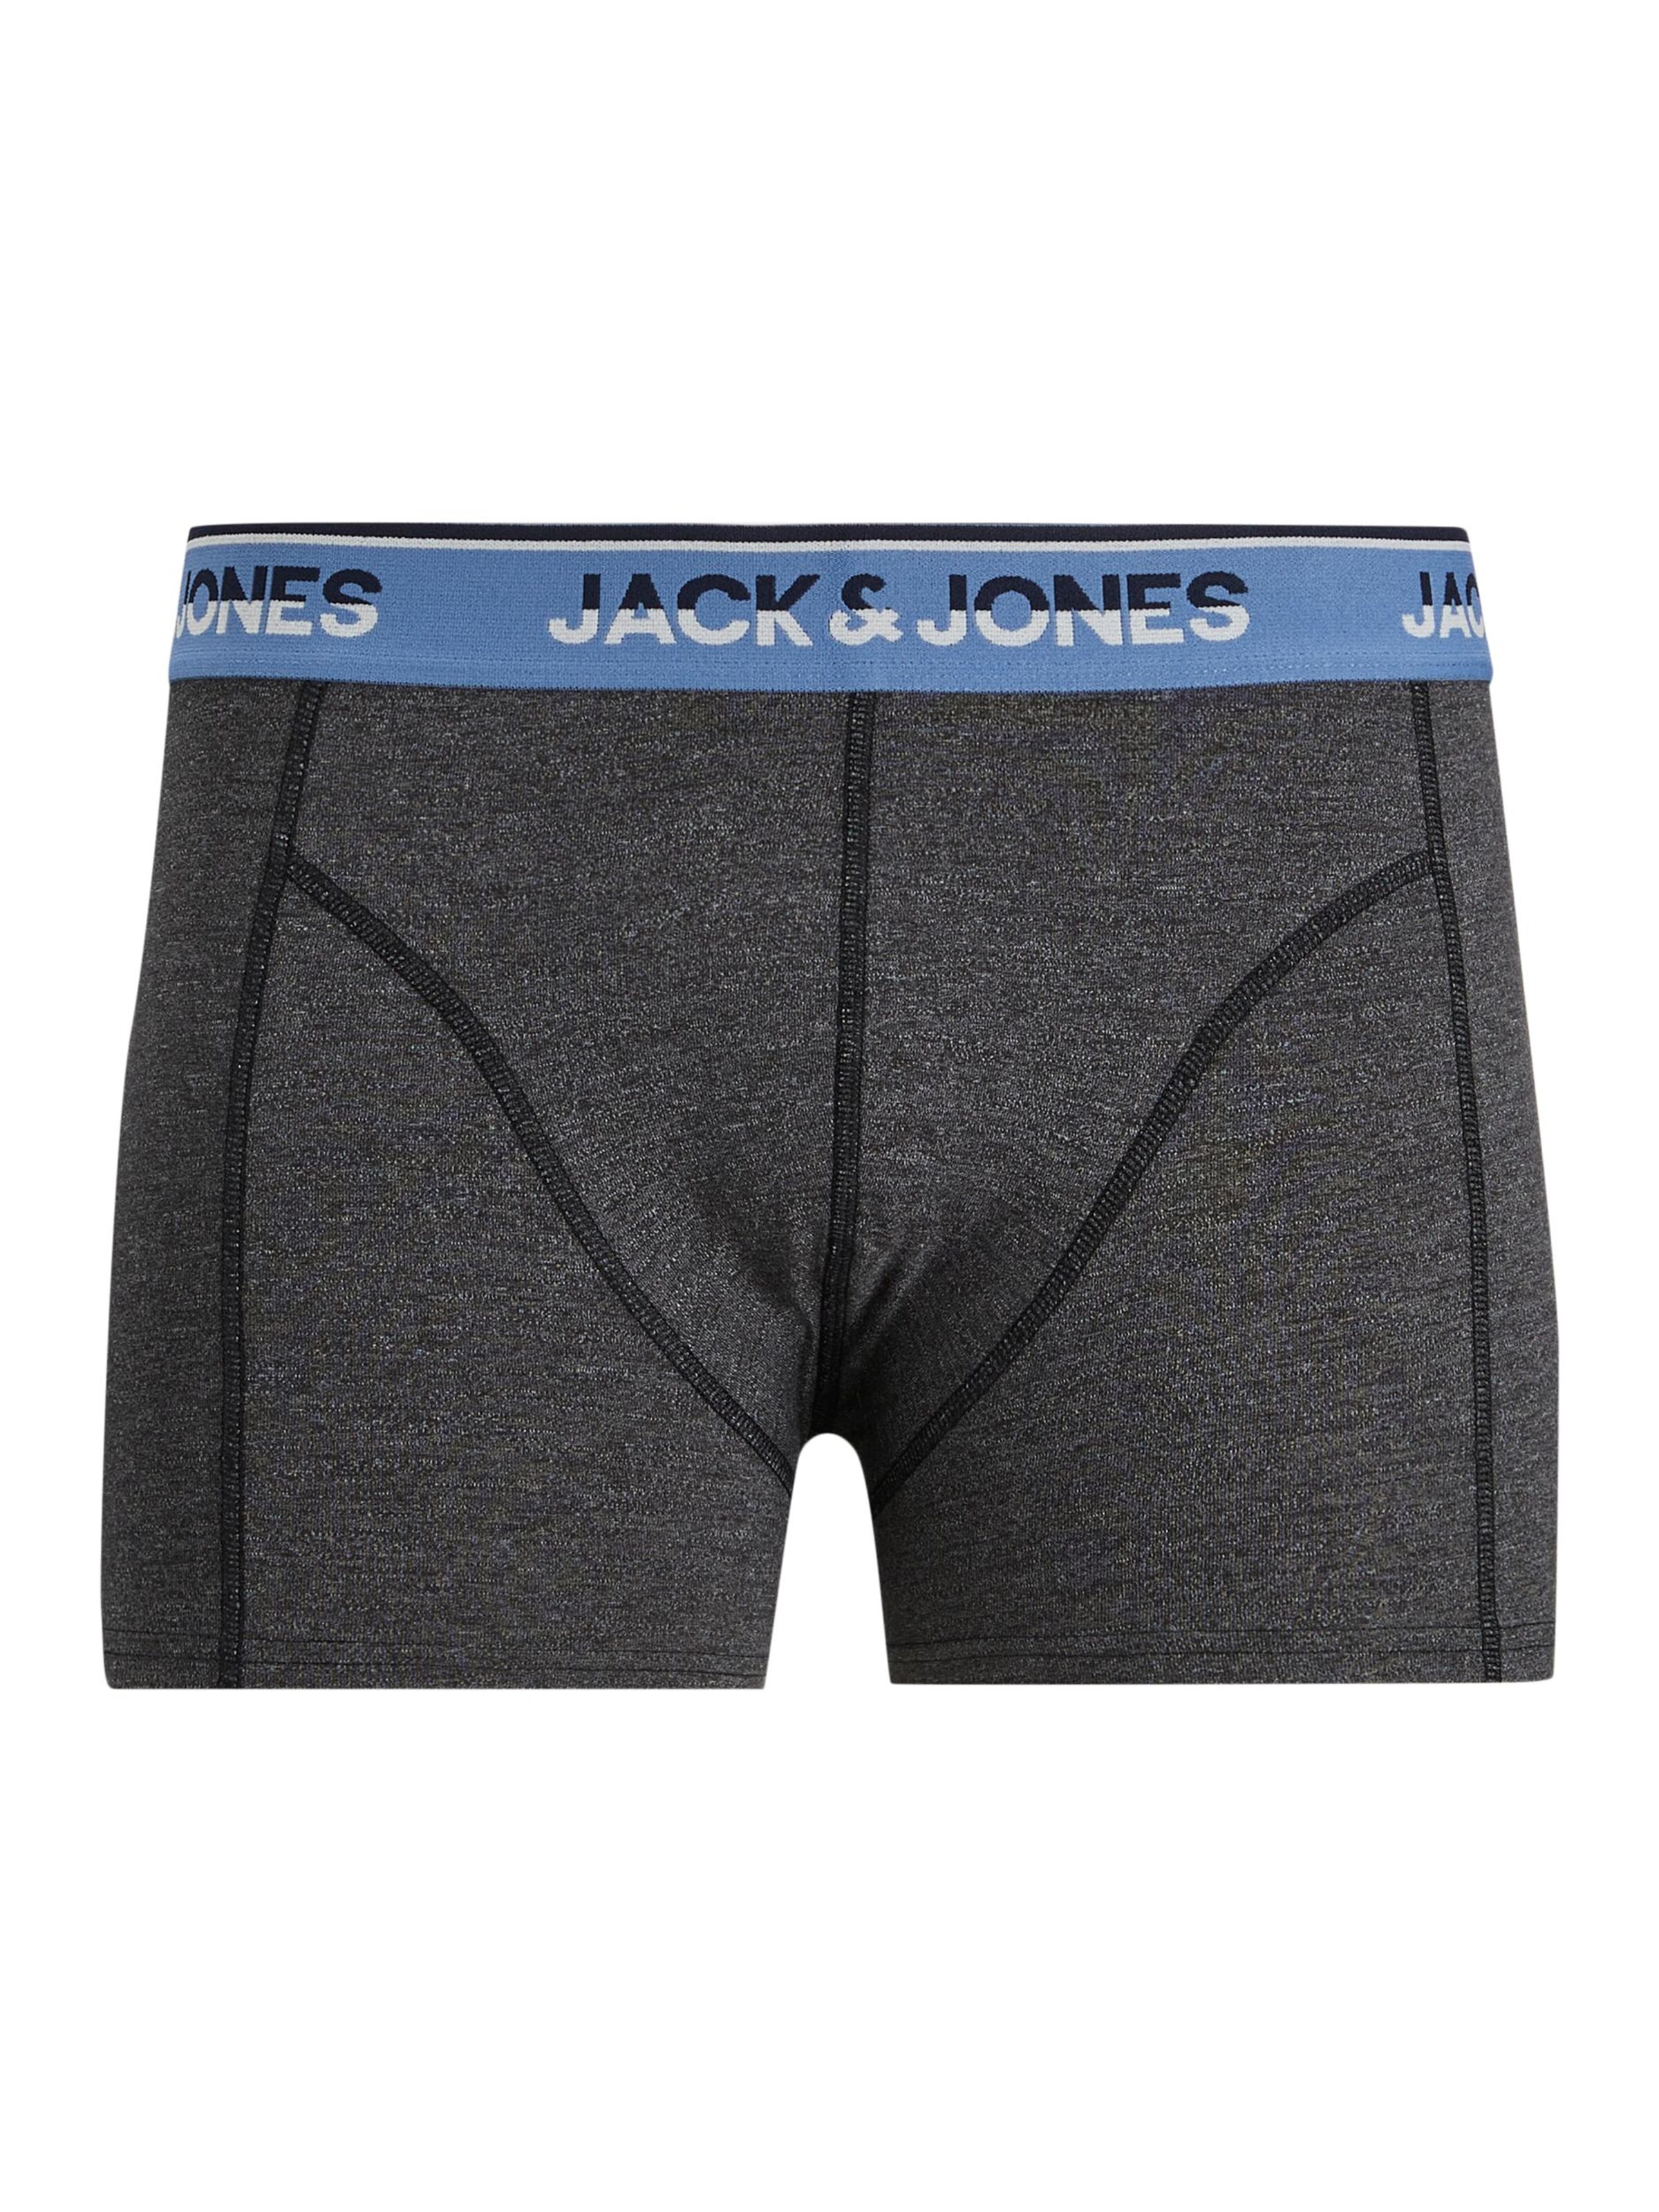 Sous-vêtements Boxers CURTIS JACK & JONES en Bleu Marine, Bleu-Gris 